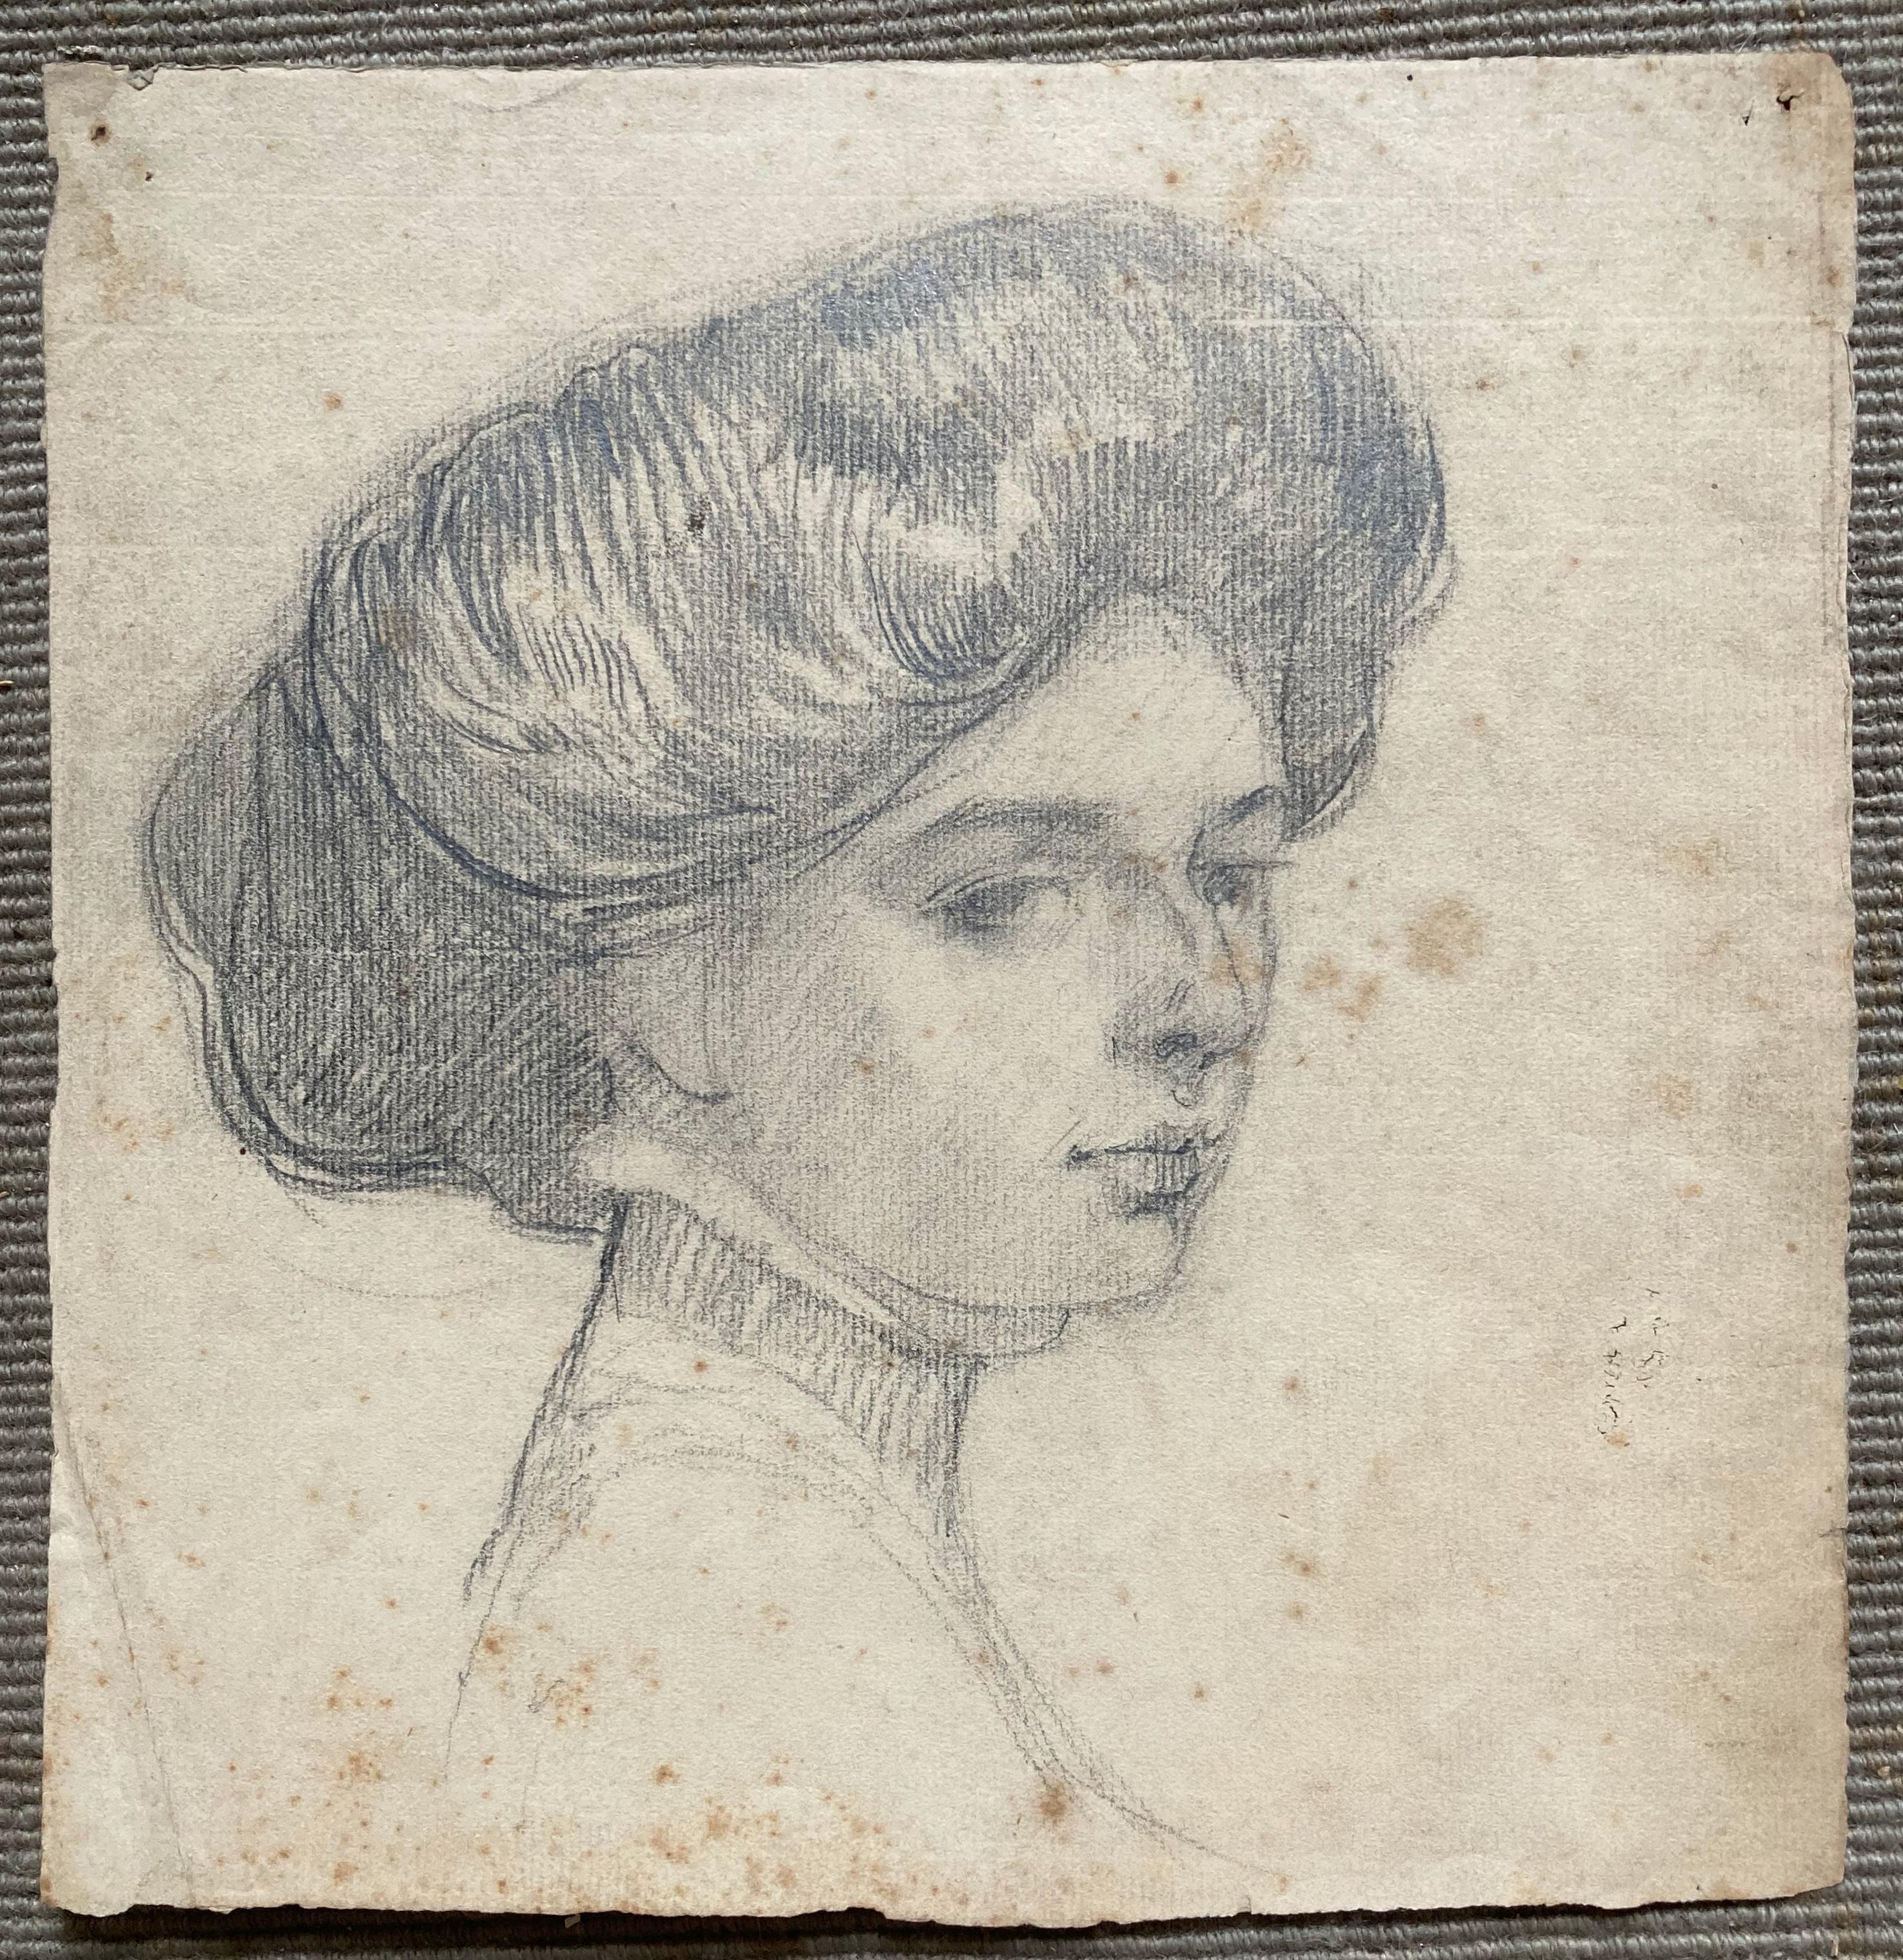 Young Lady With Coiffure - Ellsworth Woodward Antike Graphitzeichnung einer jungen Dame